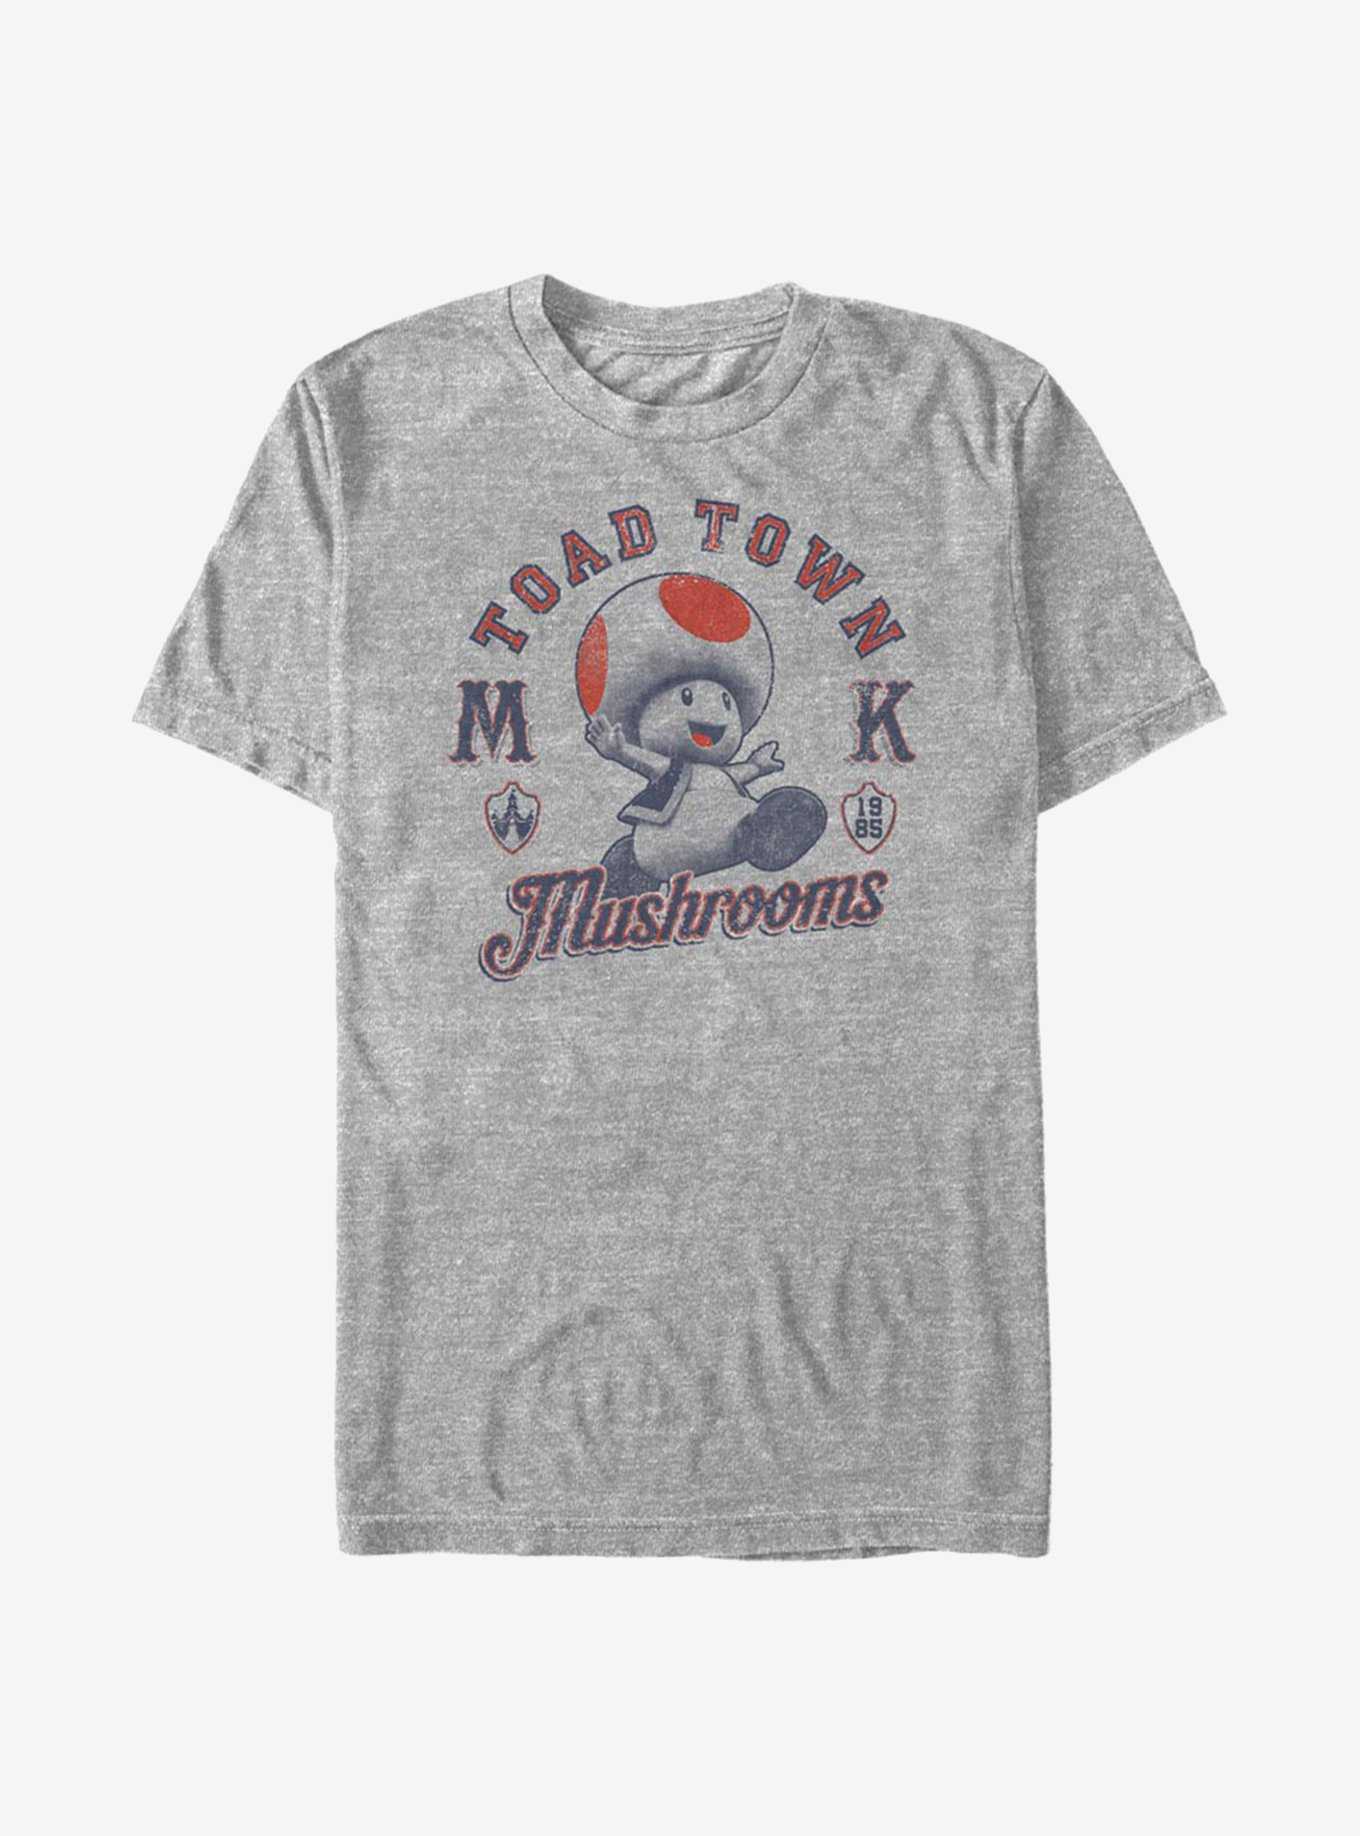 Super Mario Toad Town T-Shirt, , hi-res